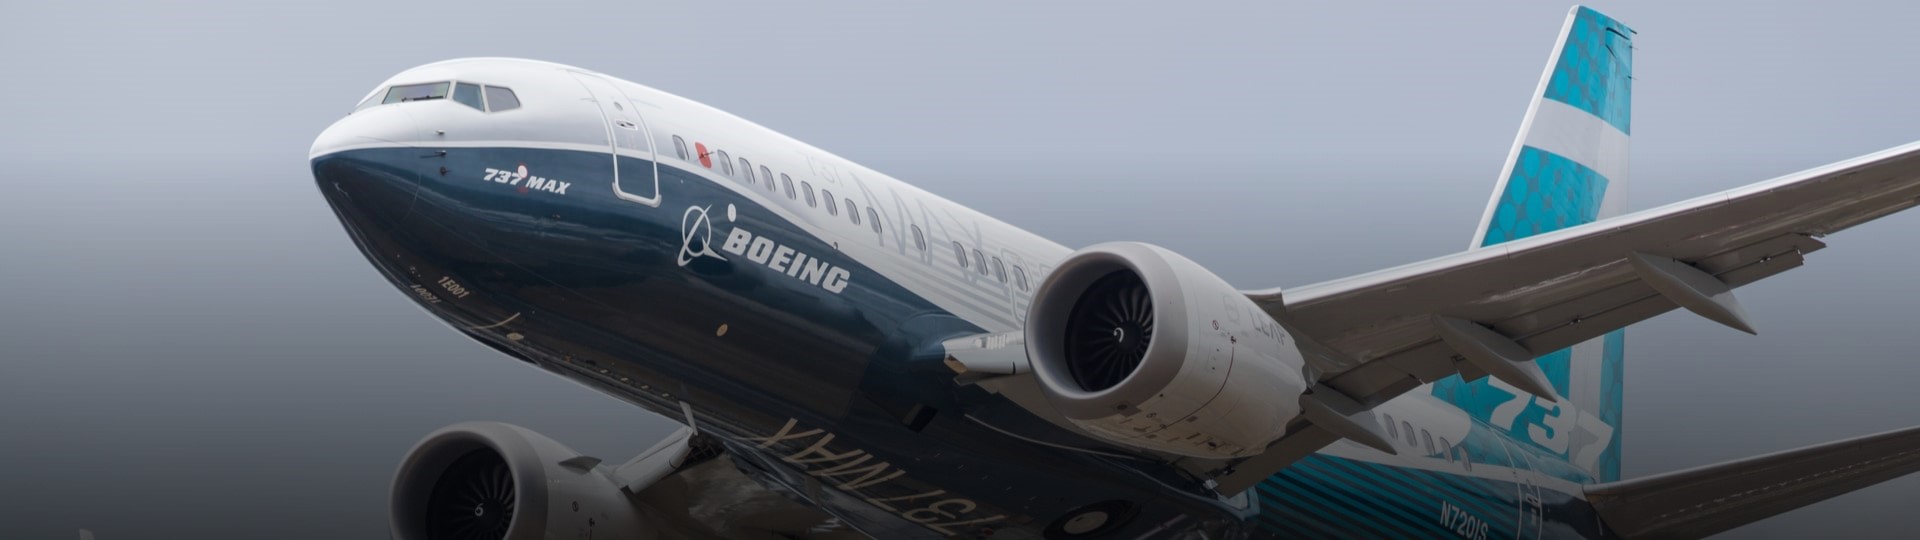 Boeing vykázal prudký pokles dodávek, výrazně zaostal za Airbusem